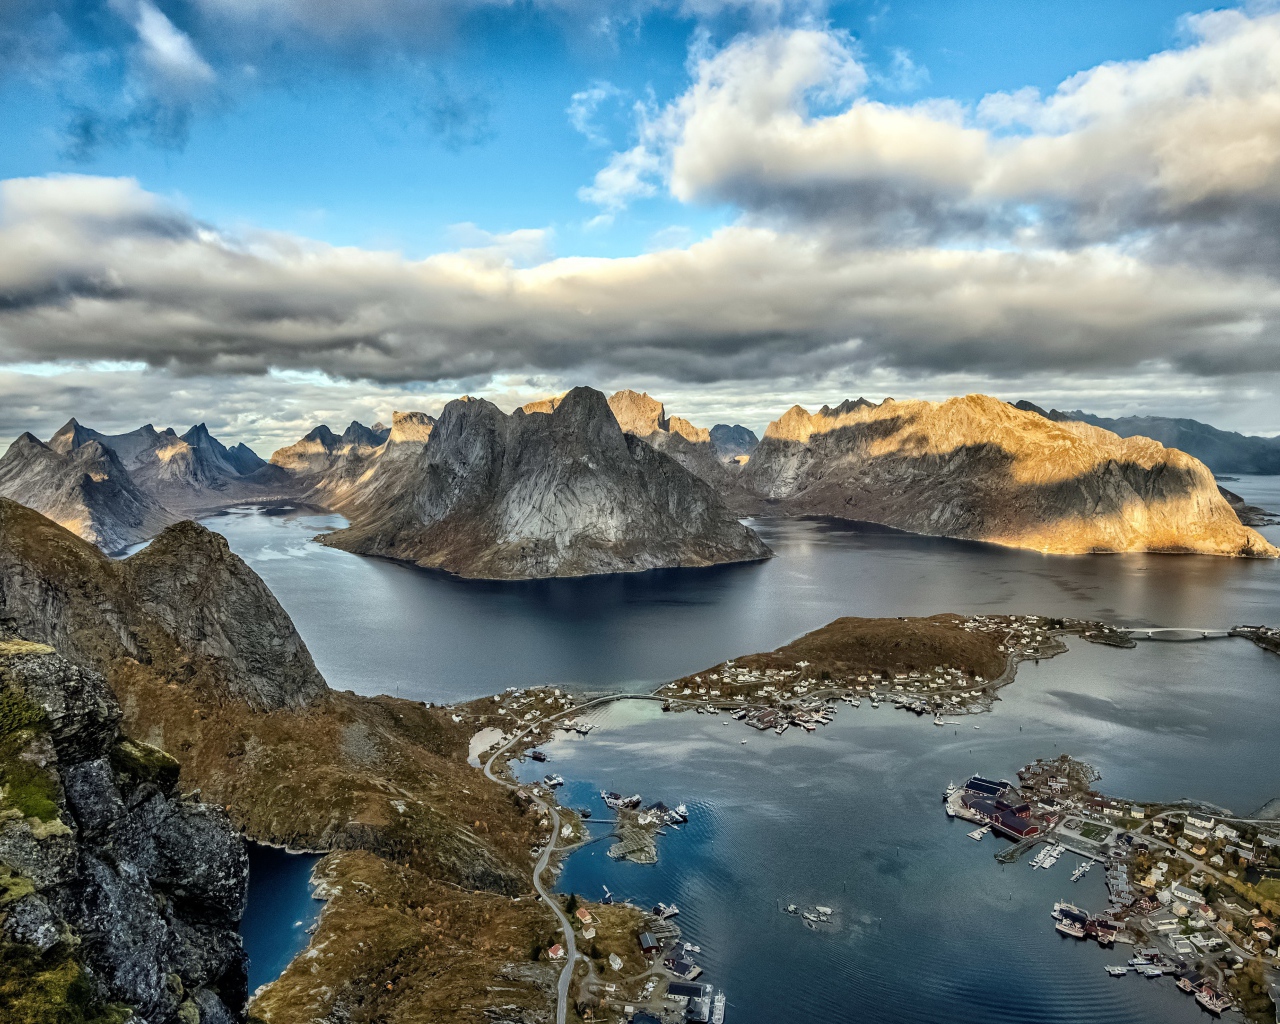 Лофотенские острова под голубым небом с белыми облаками, Норвегия 